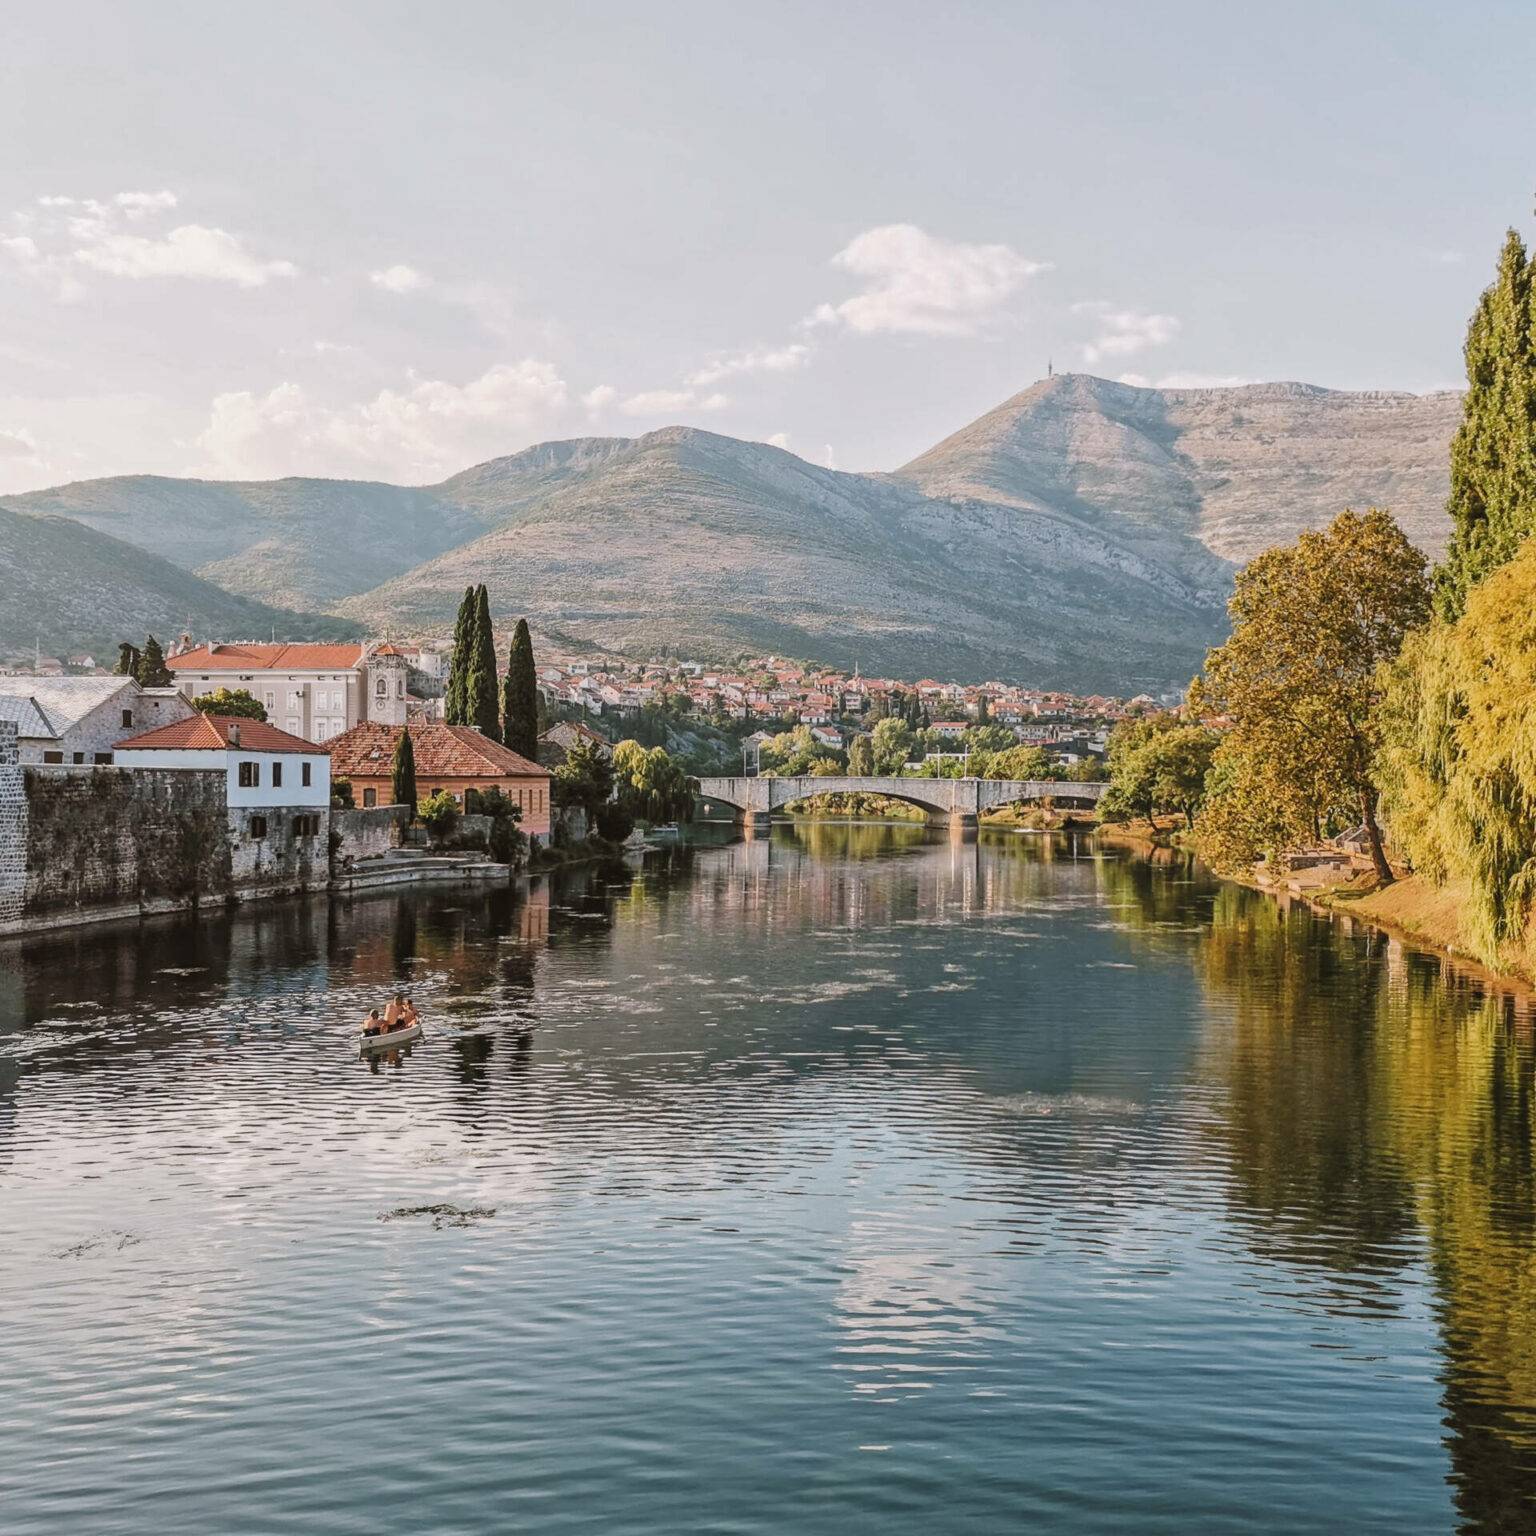 Bosniens Stadt Terbinje liegt idyllisch an einem Fluss zwischen karstigen Bergen.